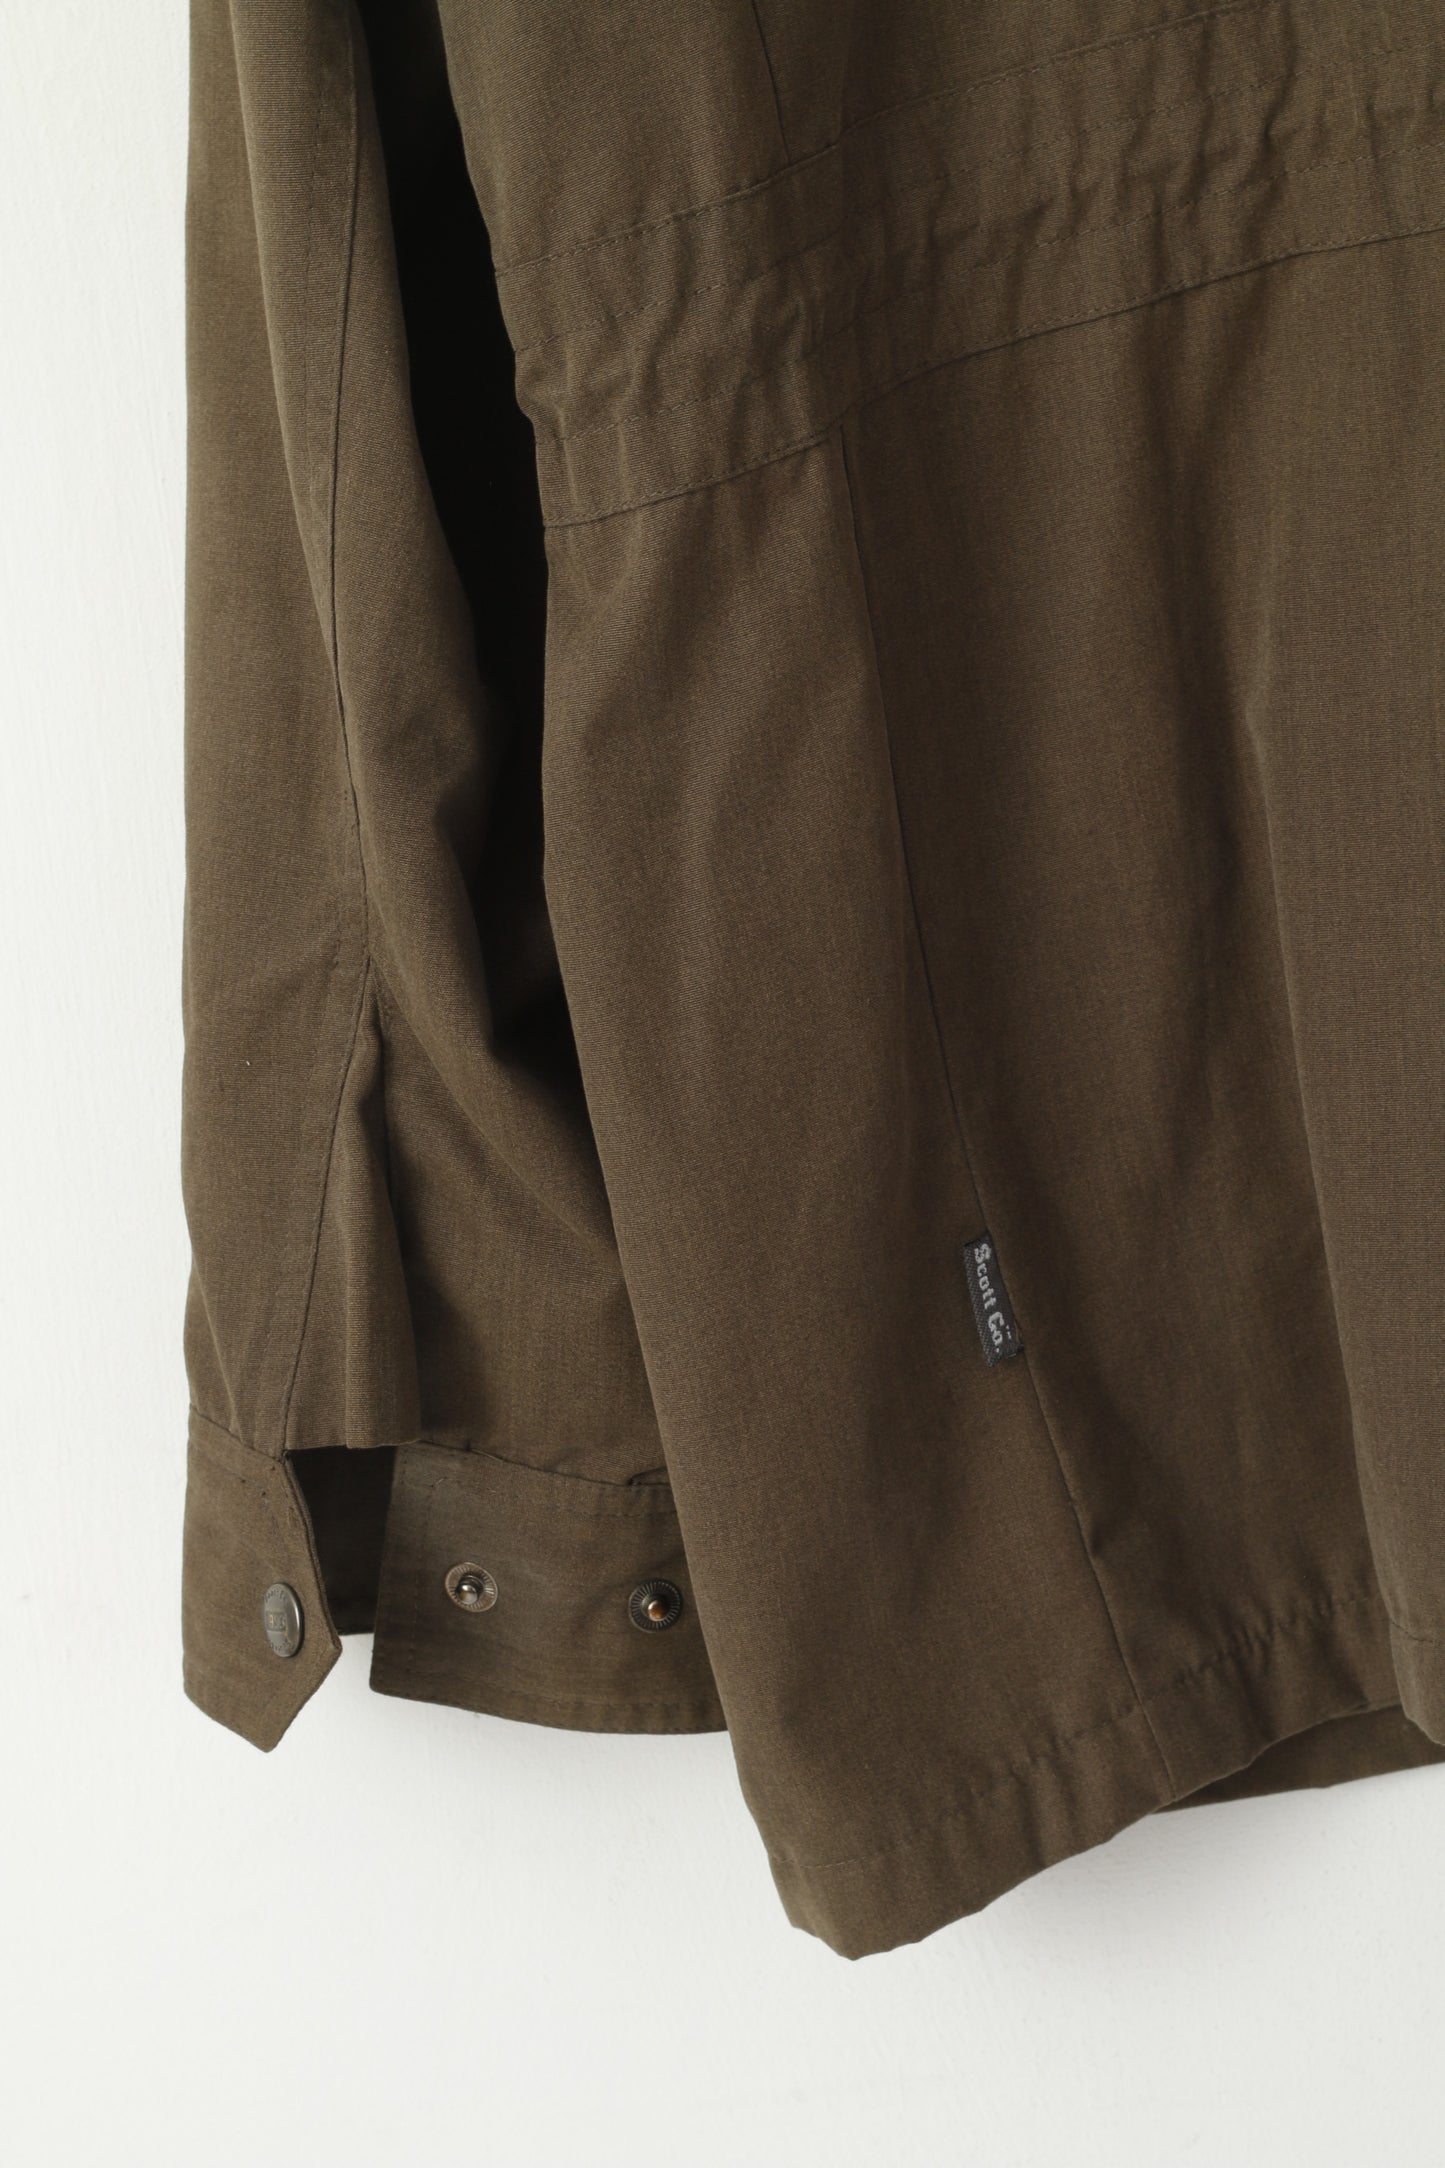 Scott Co. Men L Jacket Green Brown Full Zipper Military Lightweight Cotton Pockets Top